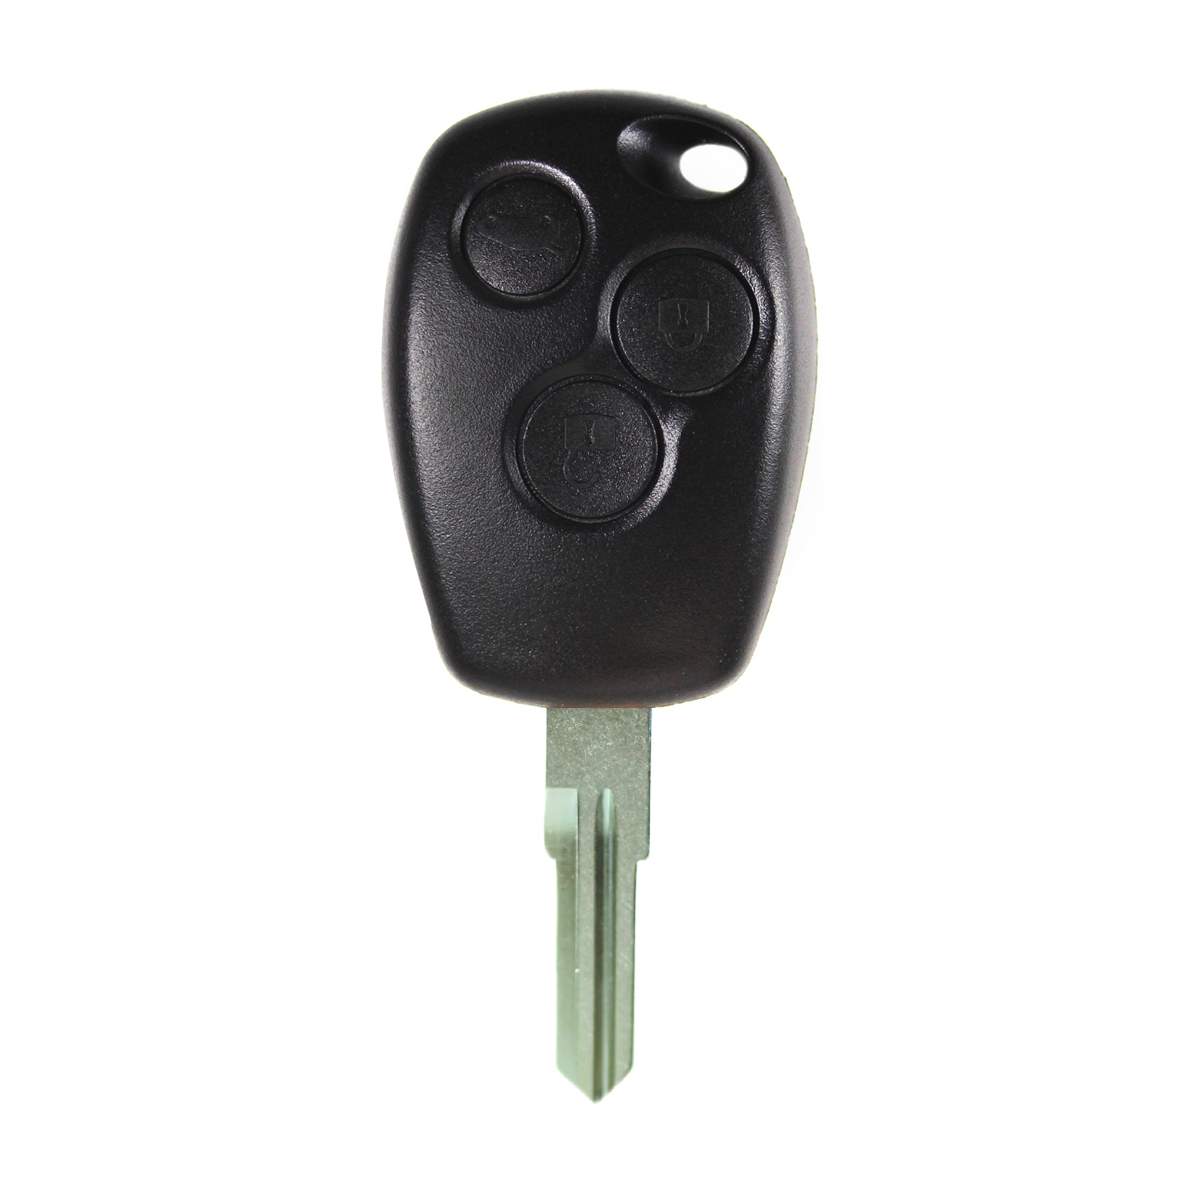 Renault compatible 2 button remote  434 MHz